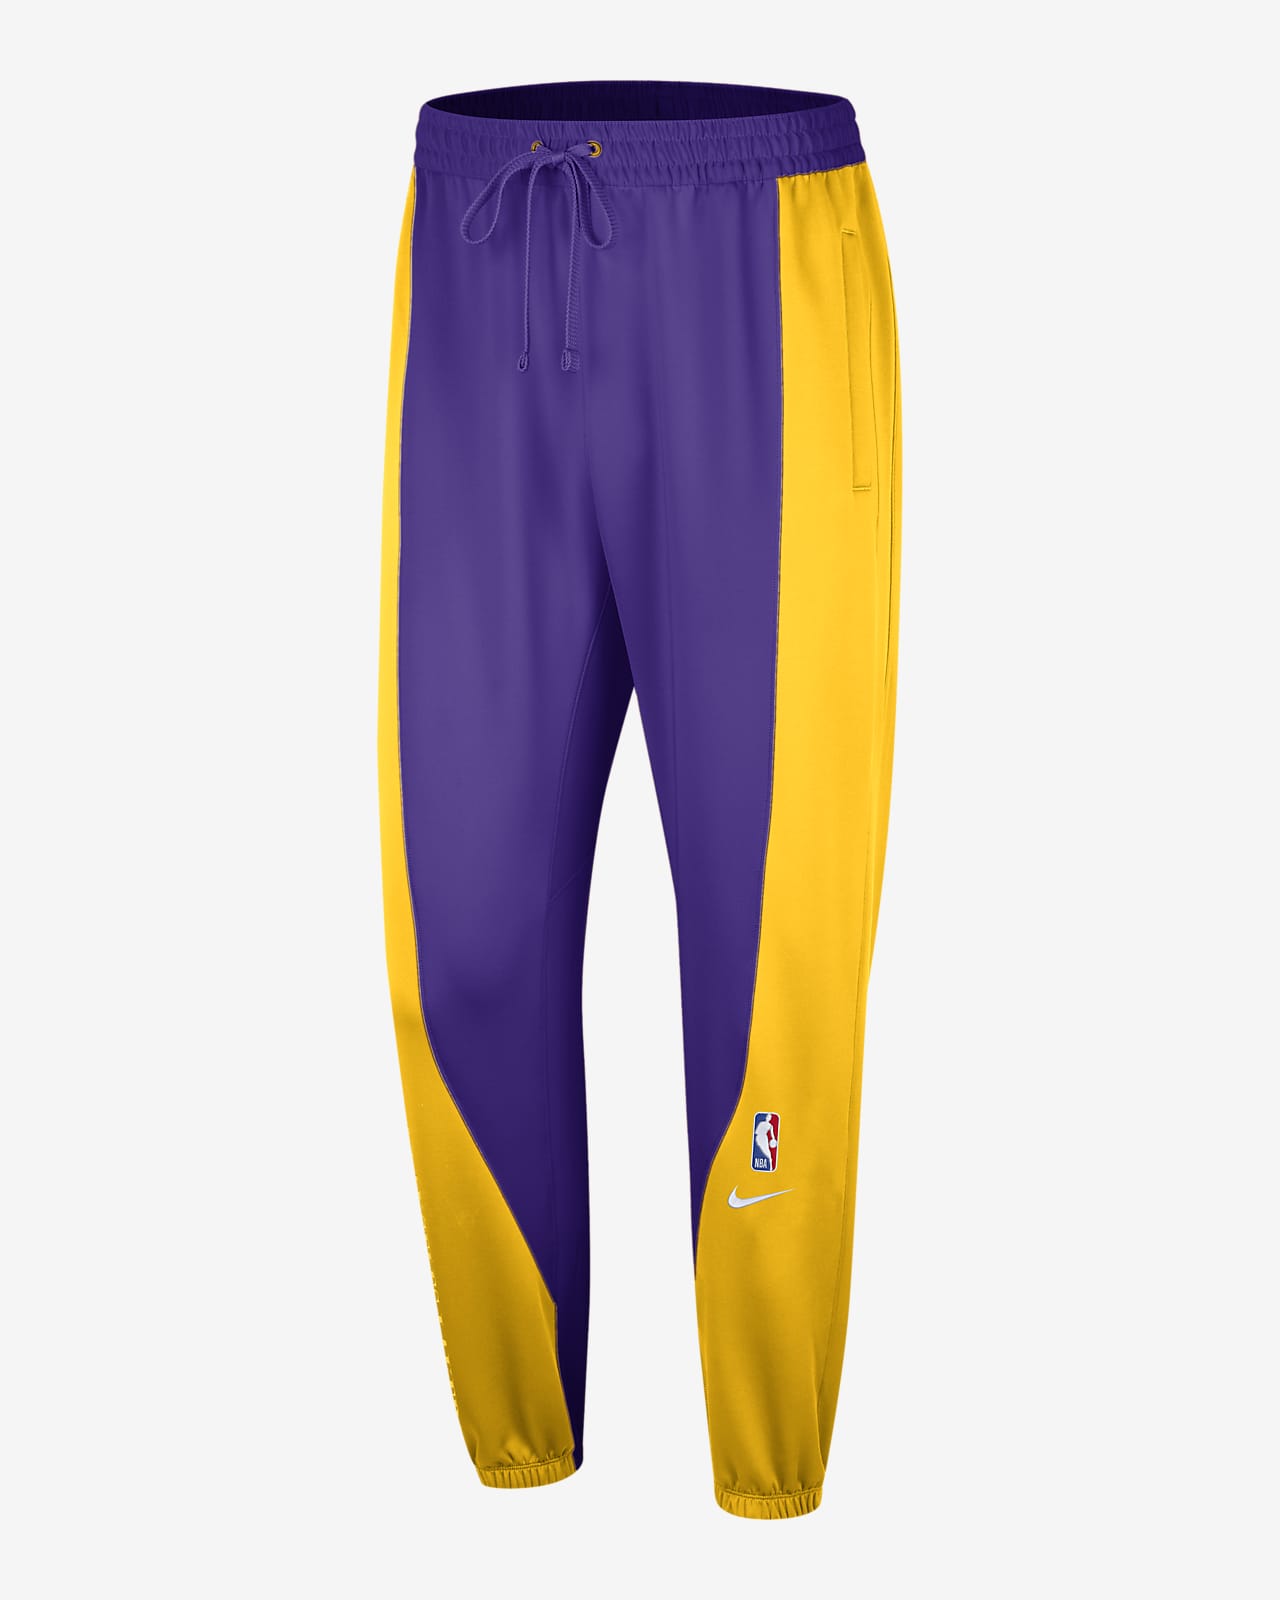 Pantaloni Los Angeles Lakers Showtime Nike Dri-FIT NBA - Uomo